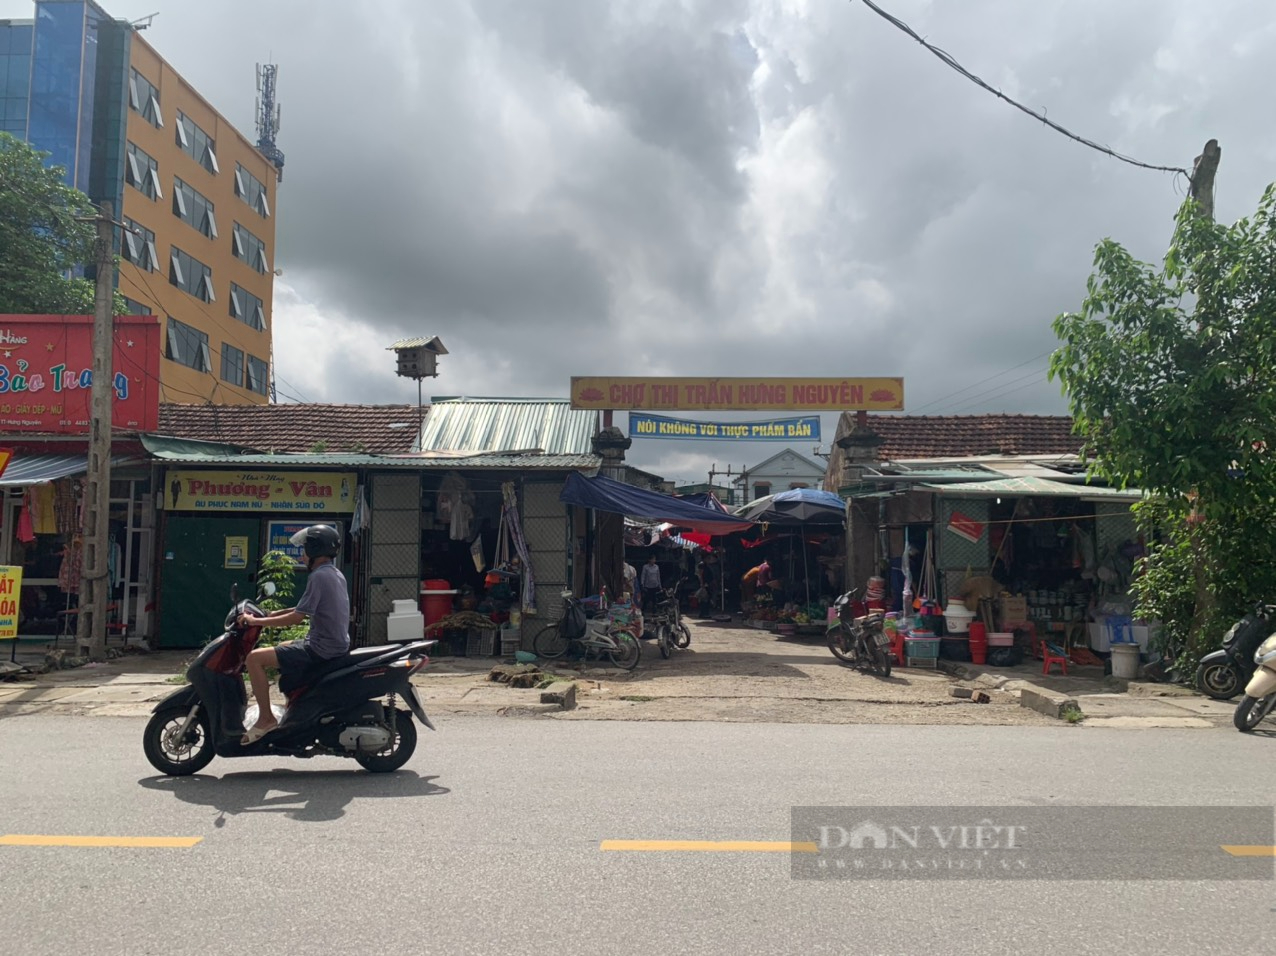 Chợ Phủ ở thị trấn Hưng Nguyên: Ô nhiễm môi trường, xuống cấp, mất an toàn giao thông - Ảnh 1.